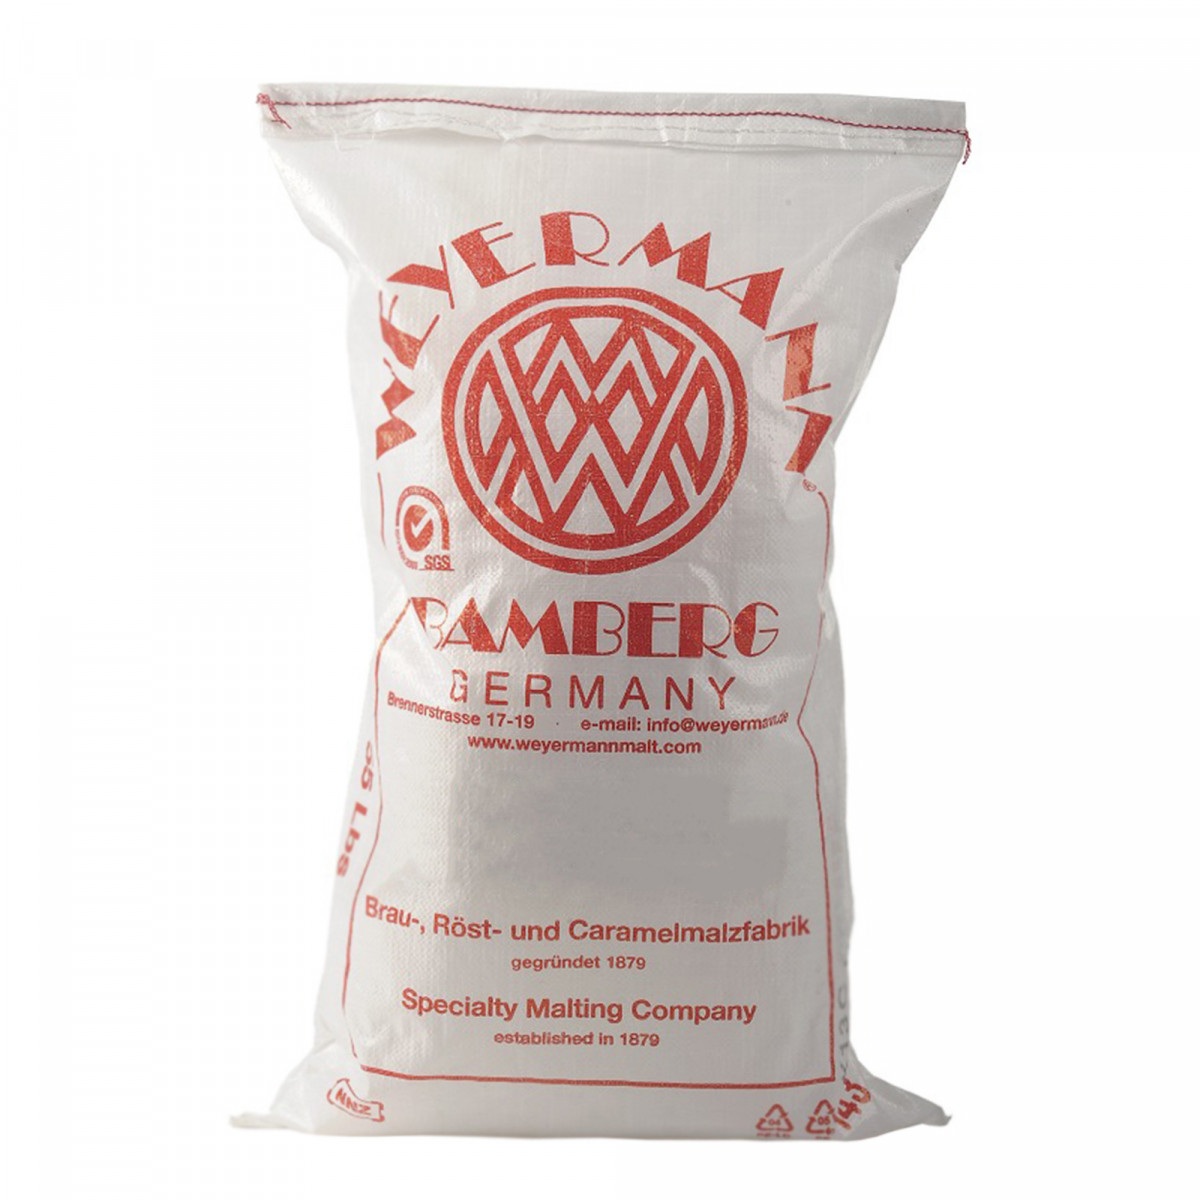 Weyermann® malt d'orge diastatique 2,5-4 EBC 25 kg